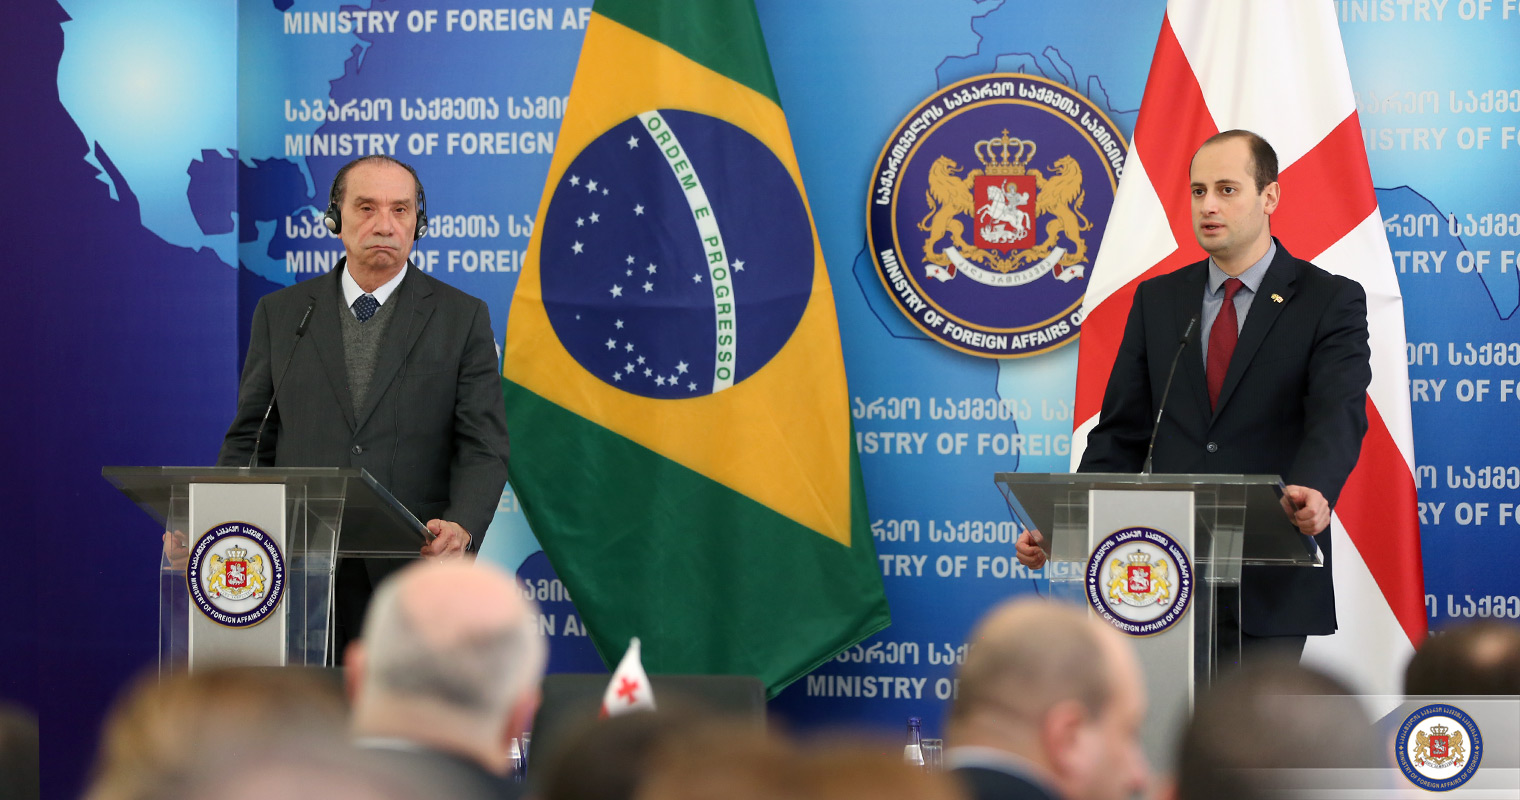 ბრაზილიისა და საქართველოს ეკონომიკური შესაძლებლობები თანამშრომლობის განვითარების დიდ პოტენციალს შეიცავს - მიხეილ ჯანელიძე